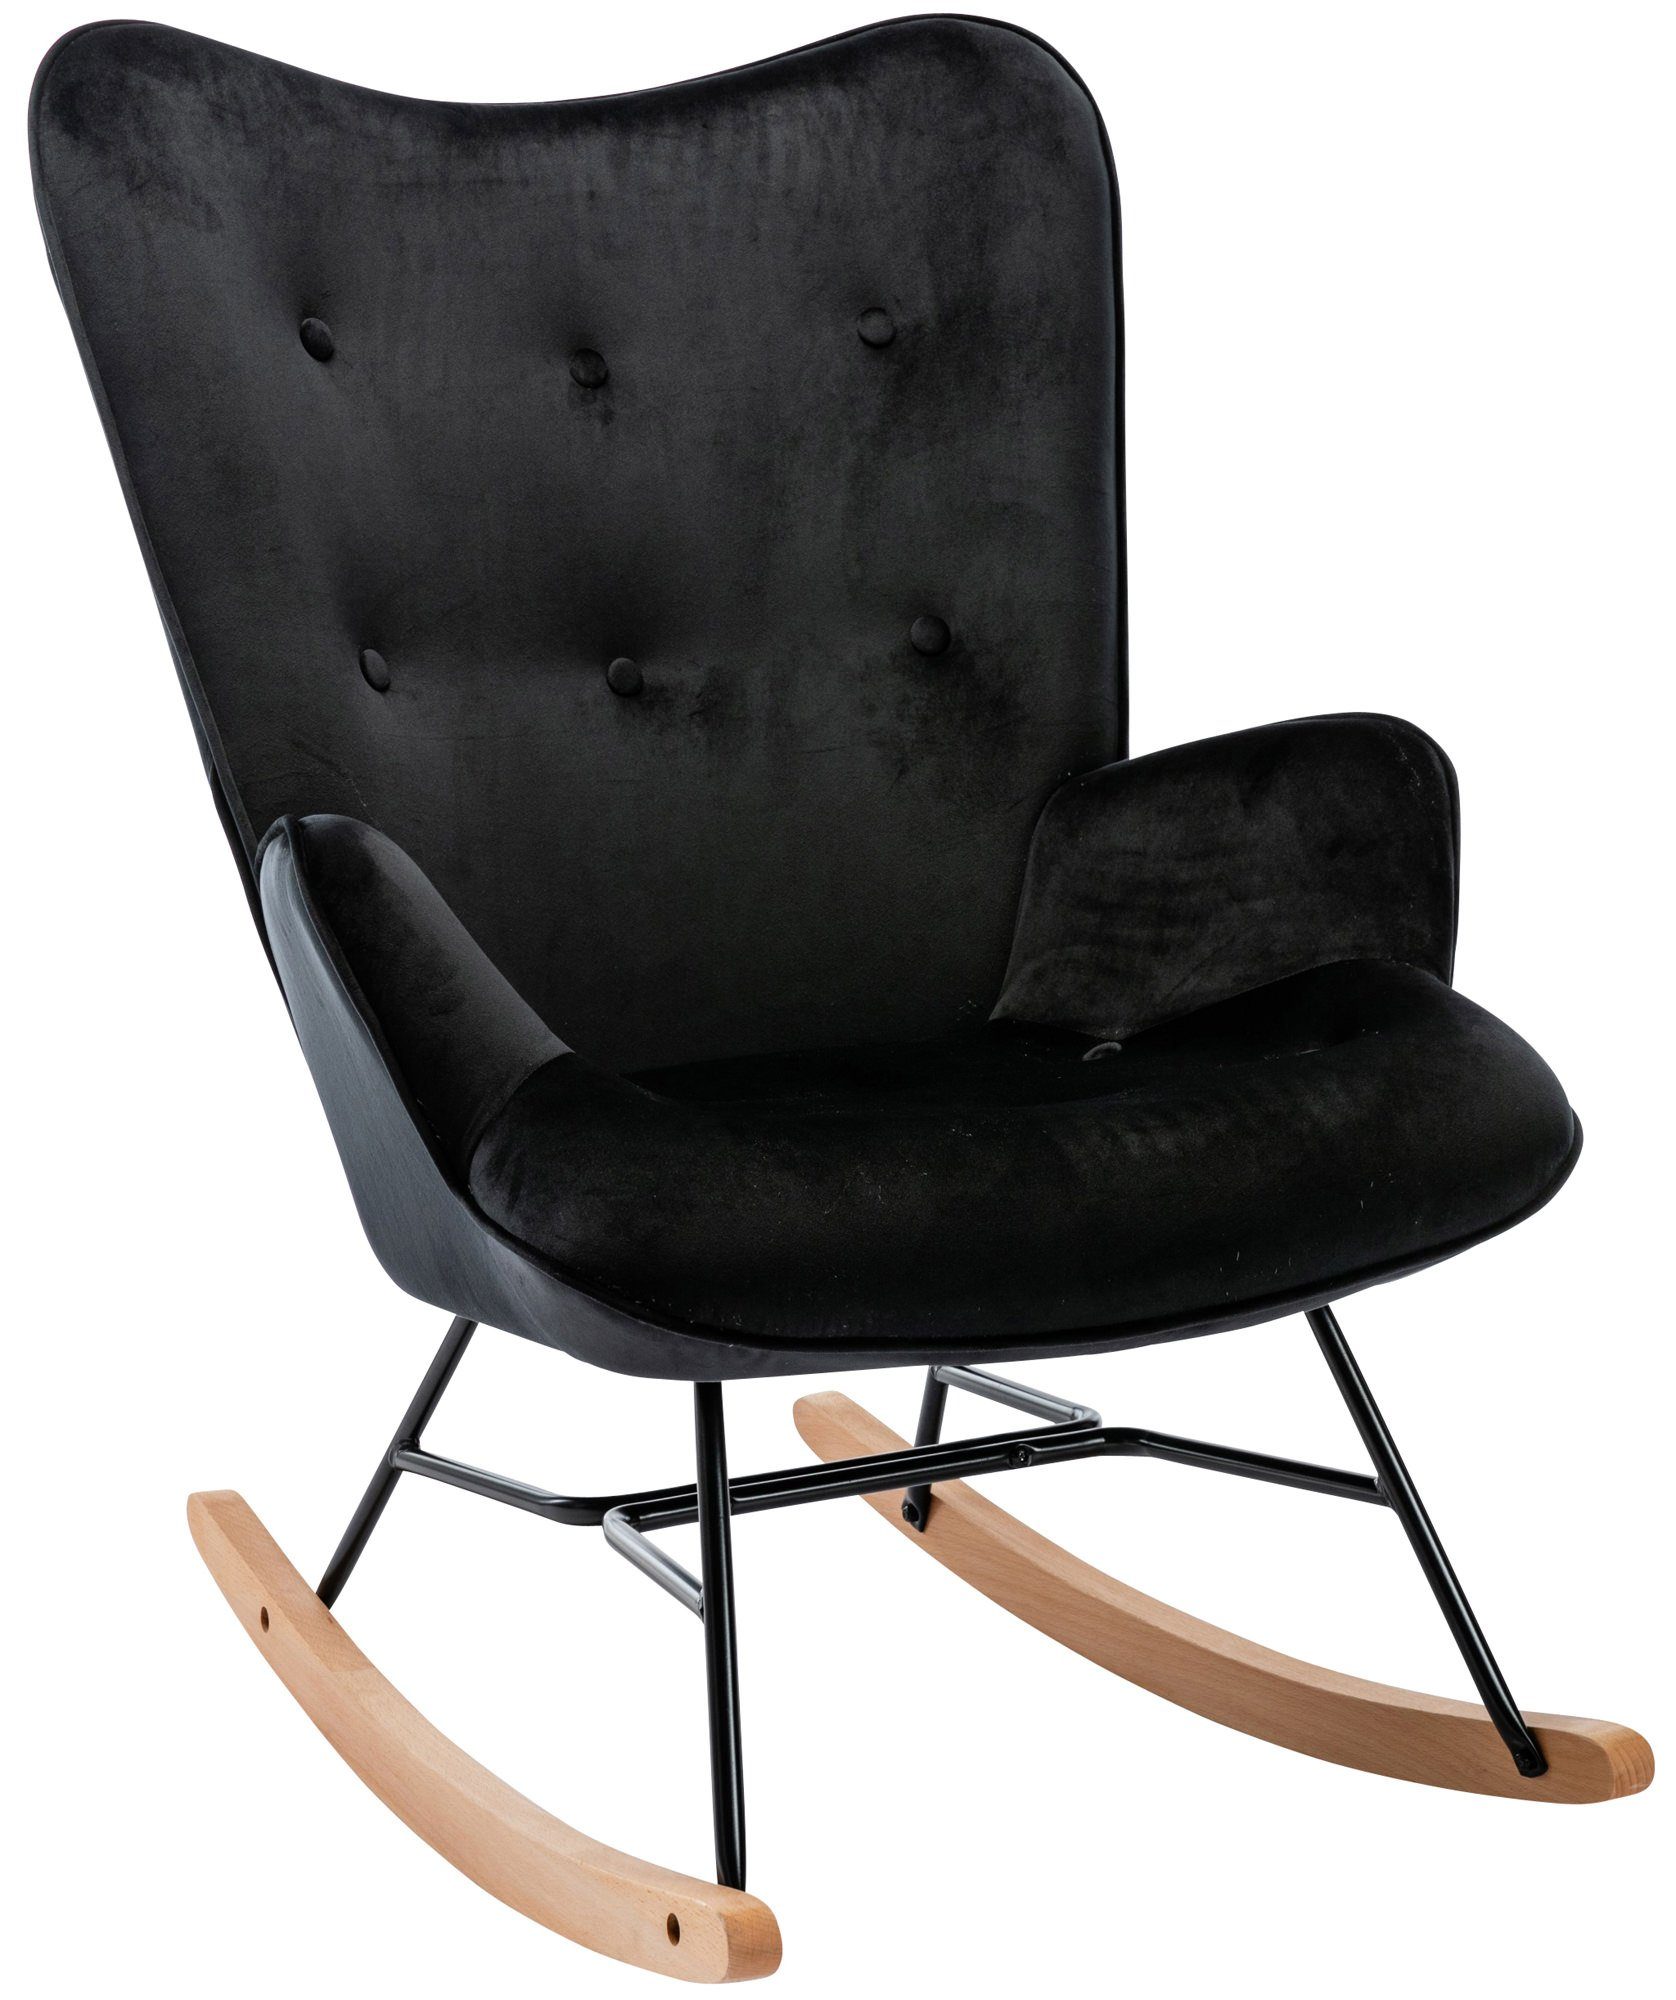 TPFLiving Schaukelstuhl Sanna mit hochwertig gepolsterter Sitzfläche  (Schwingstuhl - Relaxstuhl - Relaxsessel - Lehnstuhl), Gestell:  Buchenholz/Metall Natura/schwarz - Sitzfläche: Samt rot